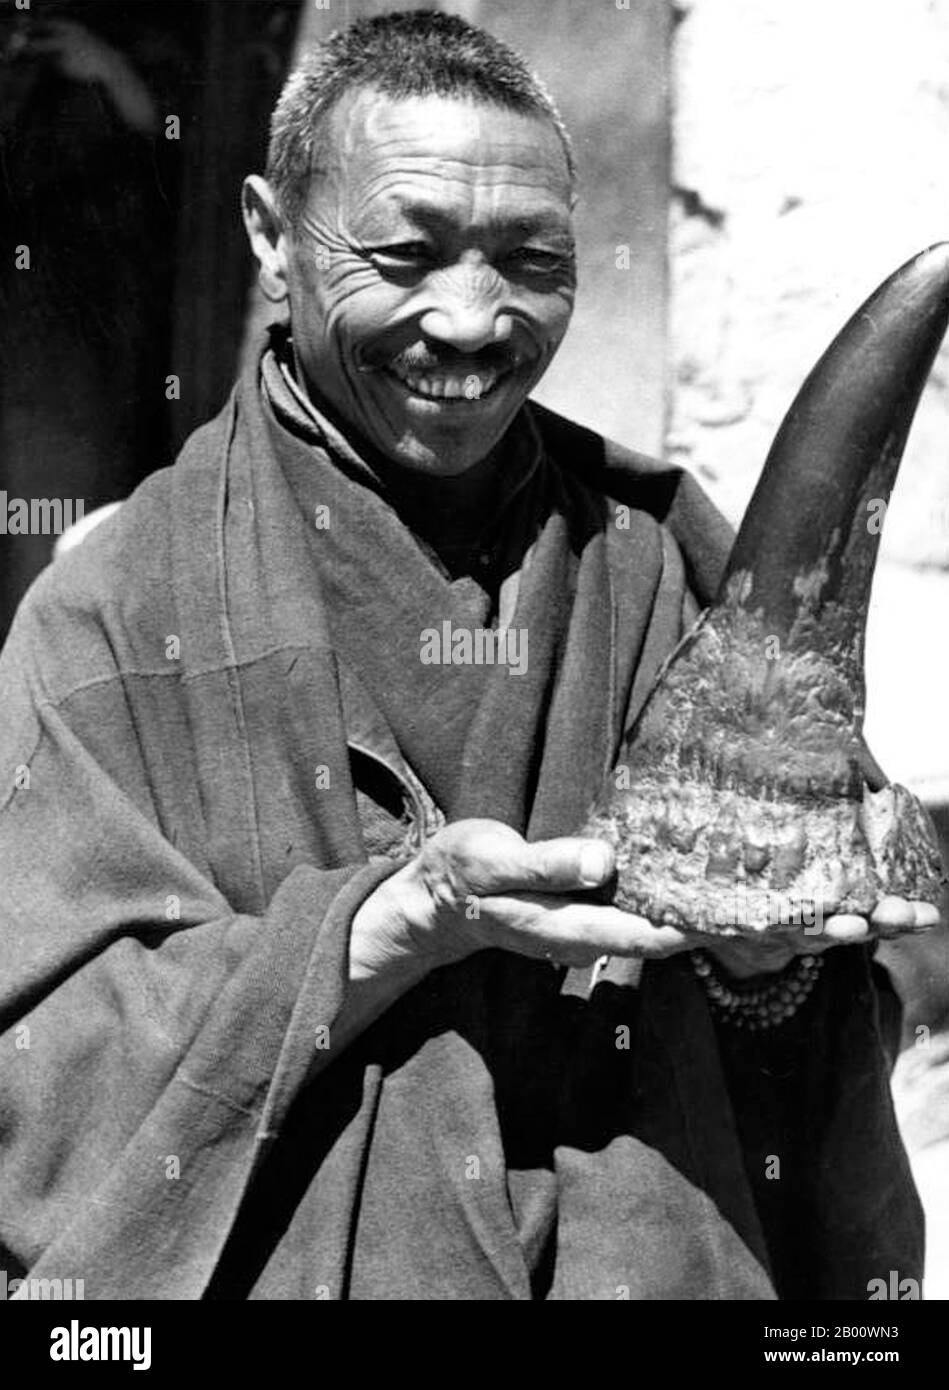 Chine/ Tibet: Un moine bouddhiste avec une corne de rhinocéros, Samye. Photo d'Ernst Schafer (1910-1992), Bundesarchiv, 1938 (Licence CC BY-sa 3.0). Les cornes de rhinocéros, contrairement à celles des autres mammifères cornés, ne sont constituées que de kératine et ne possèdent pas de noyau osseux, comme les cornes de bovins. Les cornes de rhinocéros sont utilisées en médecine asiatique traditionnelle et pour les poignées de poignard au Yémen et en Oman. Une idée fausse répétée est que la corne de rhinocéros sous forme de poudre est utilisée comme aphrodisiaque en médecine chinoise traditionnelle. Il est, en fait, prescrit pour les fièvres et les convulsions. La Chine a toutefois signé le traité CITES. Banque D'Images